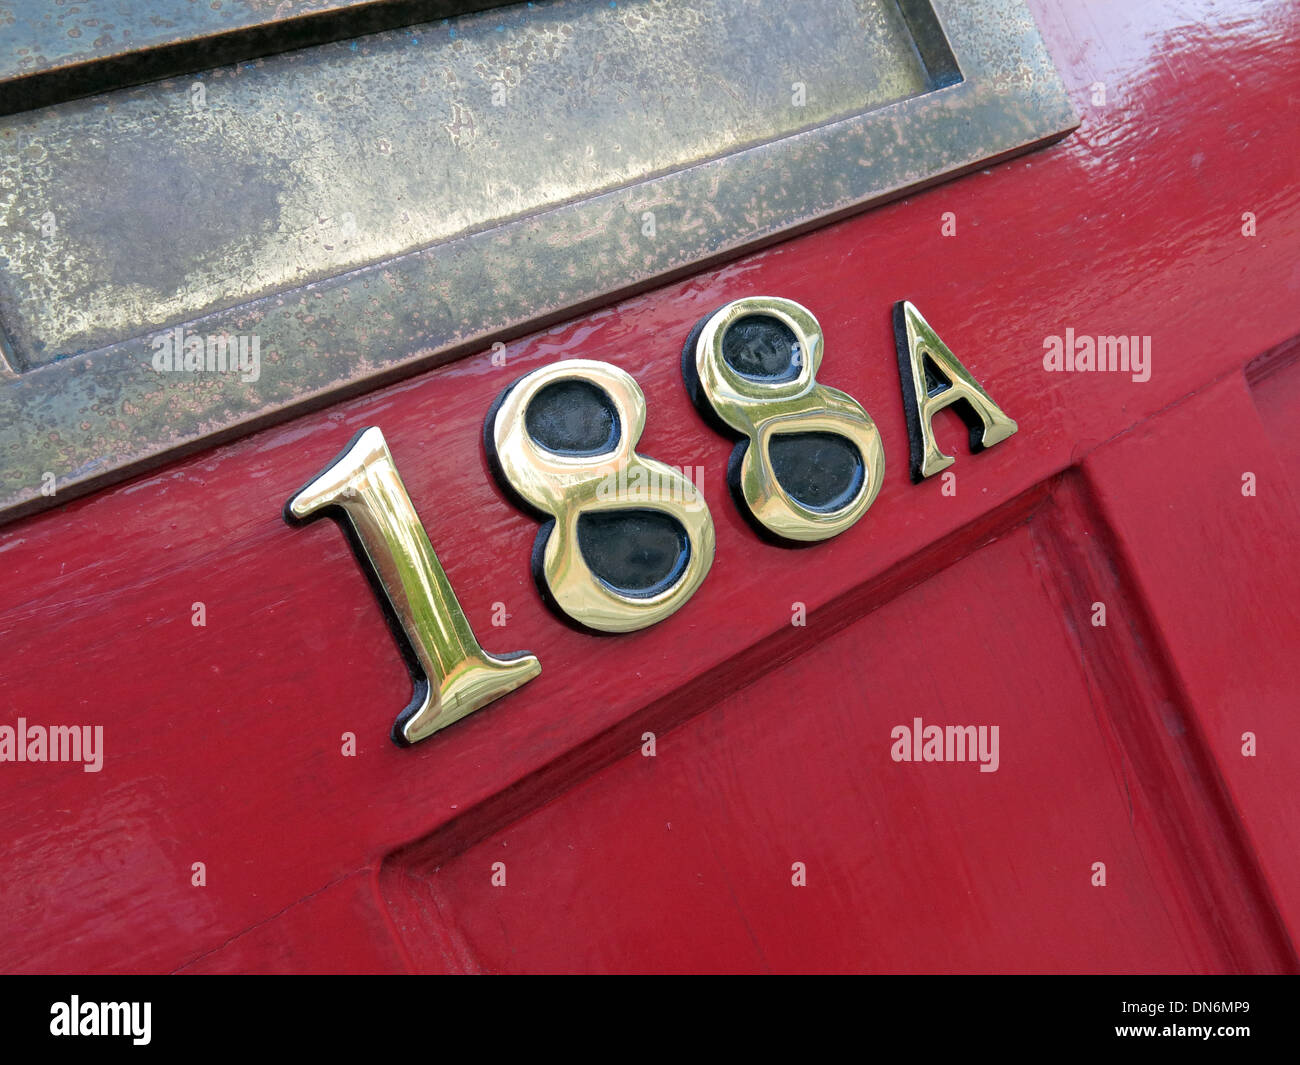 Porte rouge numéro 118a avec boîte aux lettres, dans une rue de banlieue, Angleterre, Royaume-Uni Banque D'Images